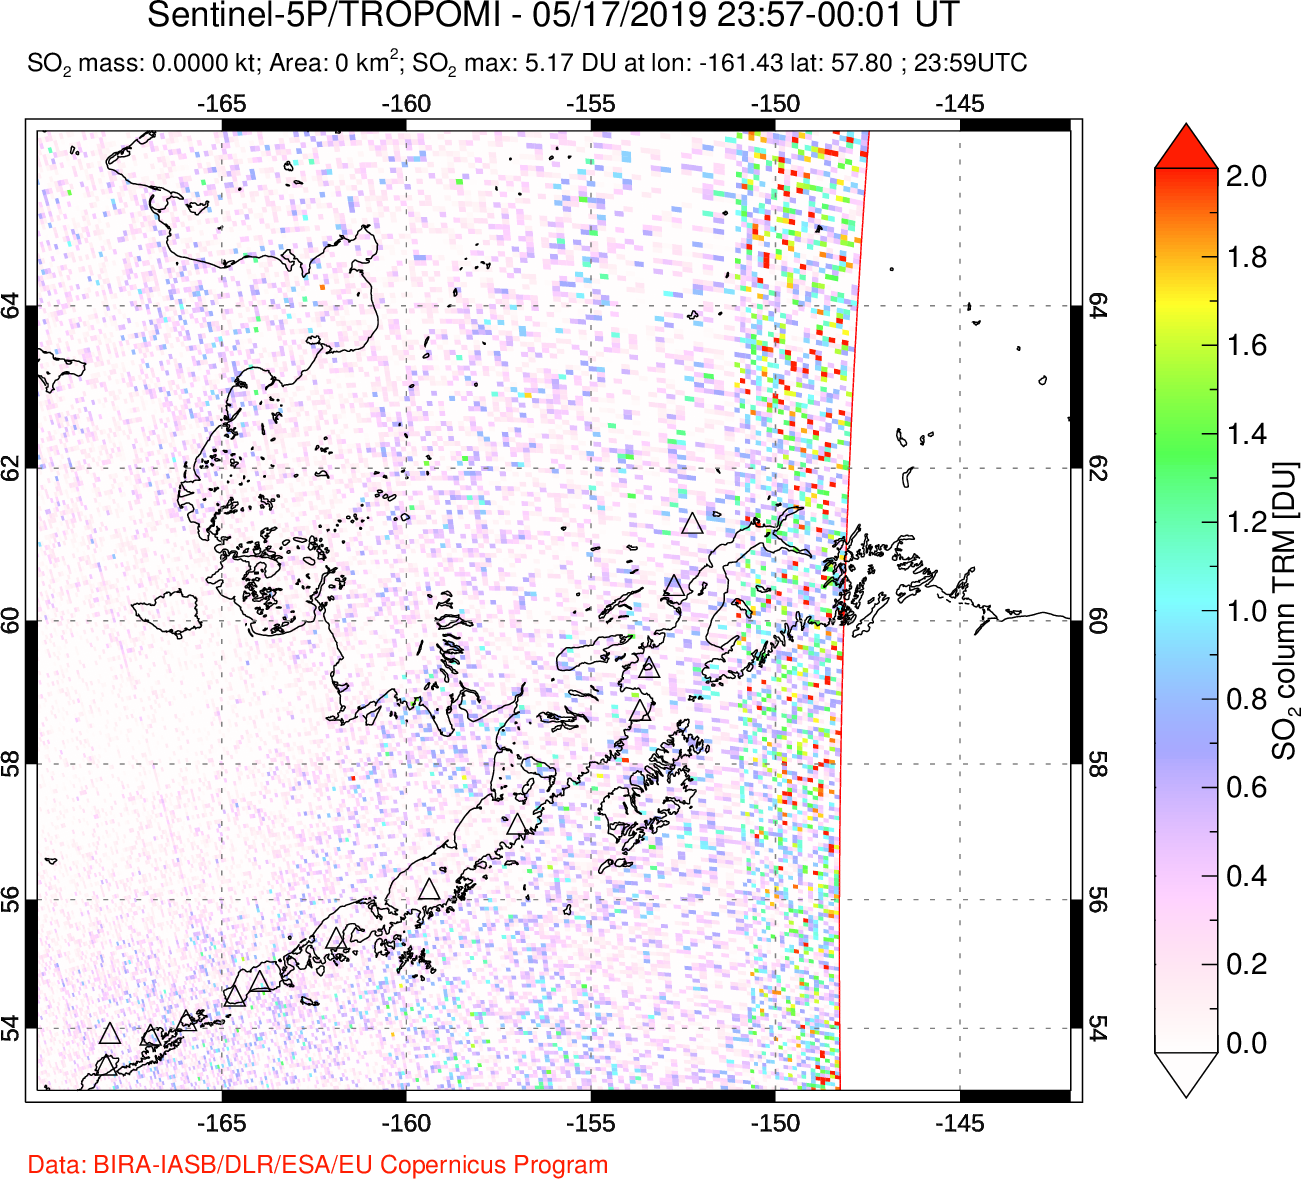 A sulfur dioxide image over Alaska, USA on May 17, 2019.